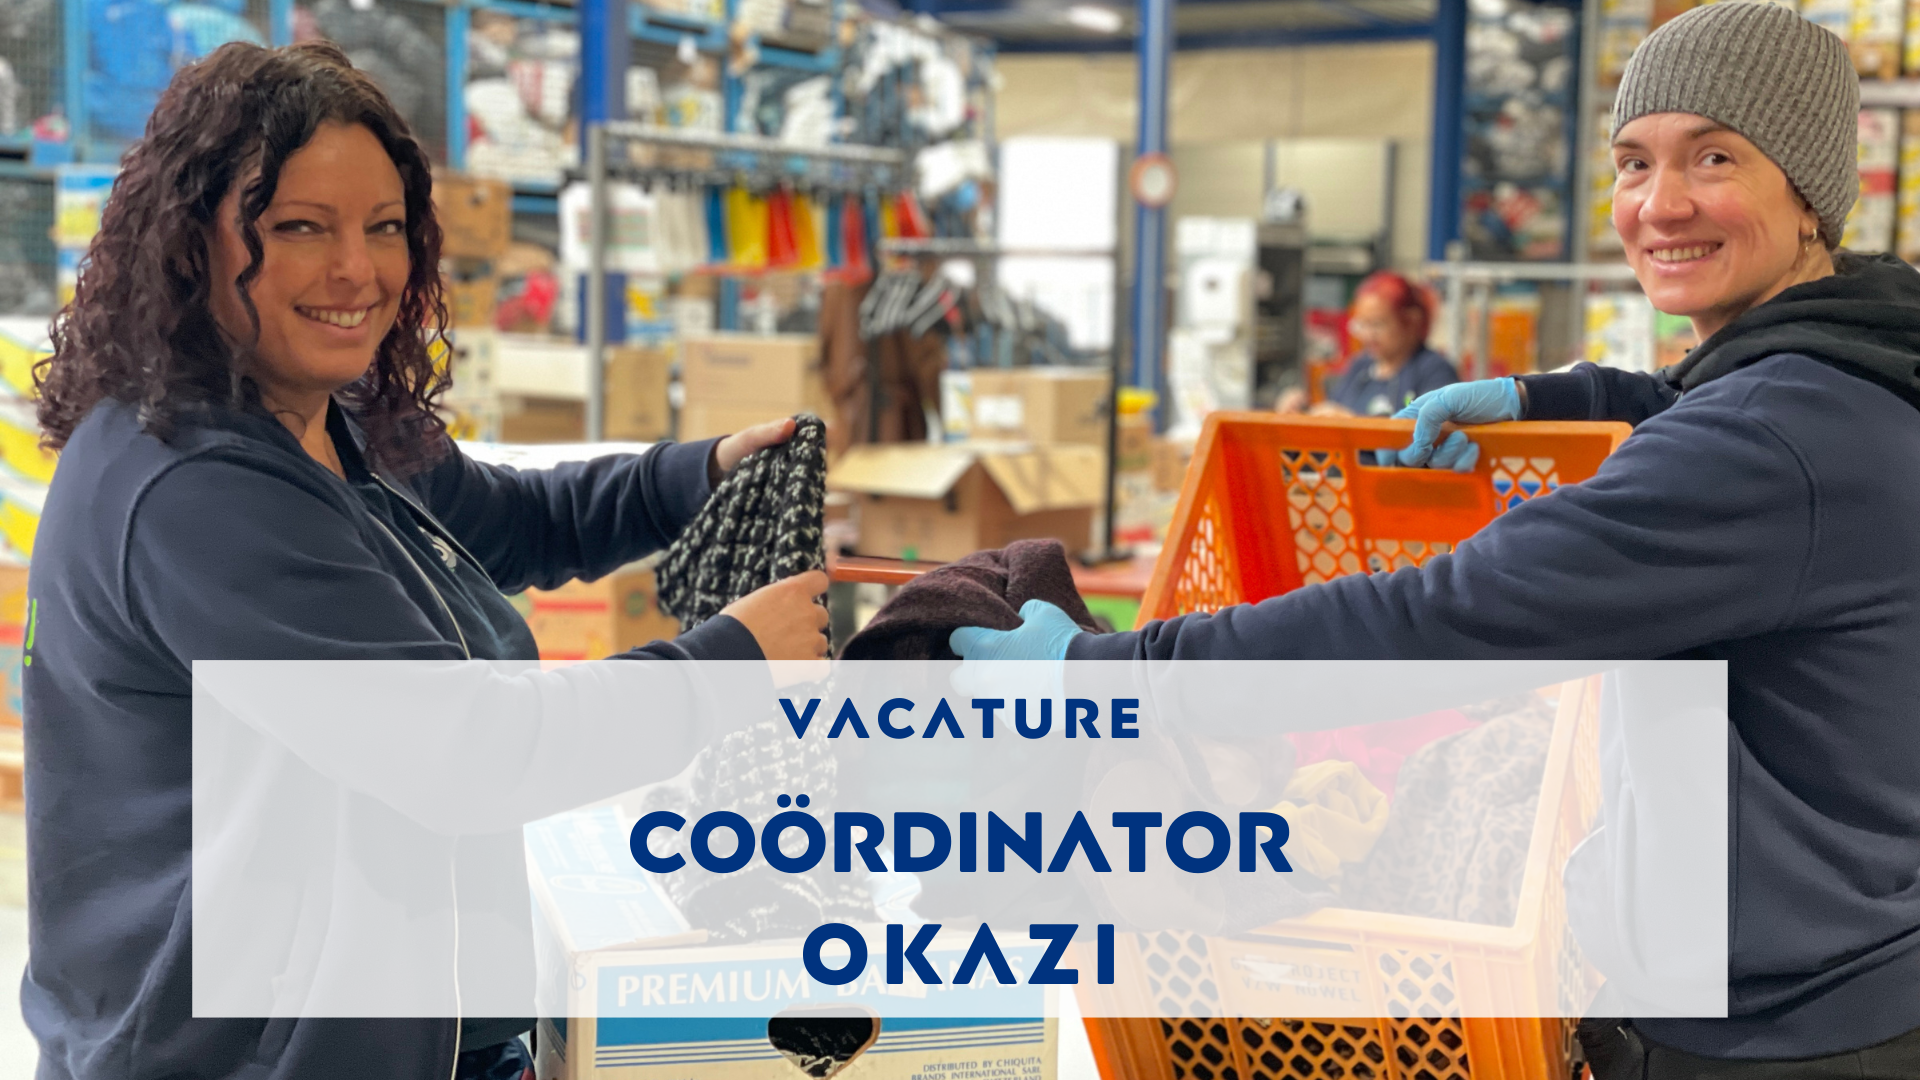 Website vacature coordinator Okazi.png